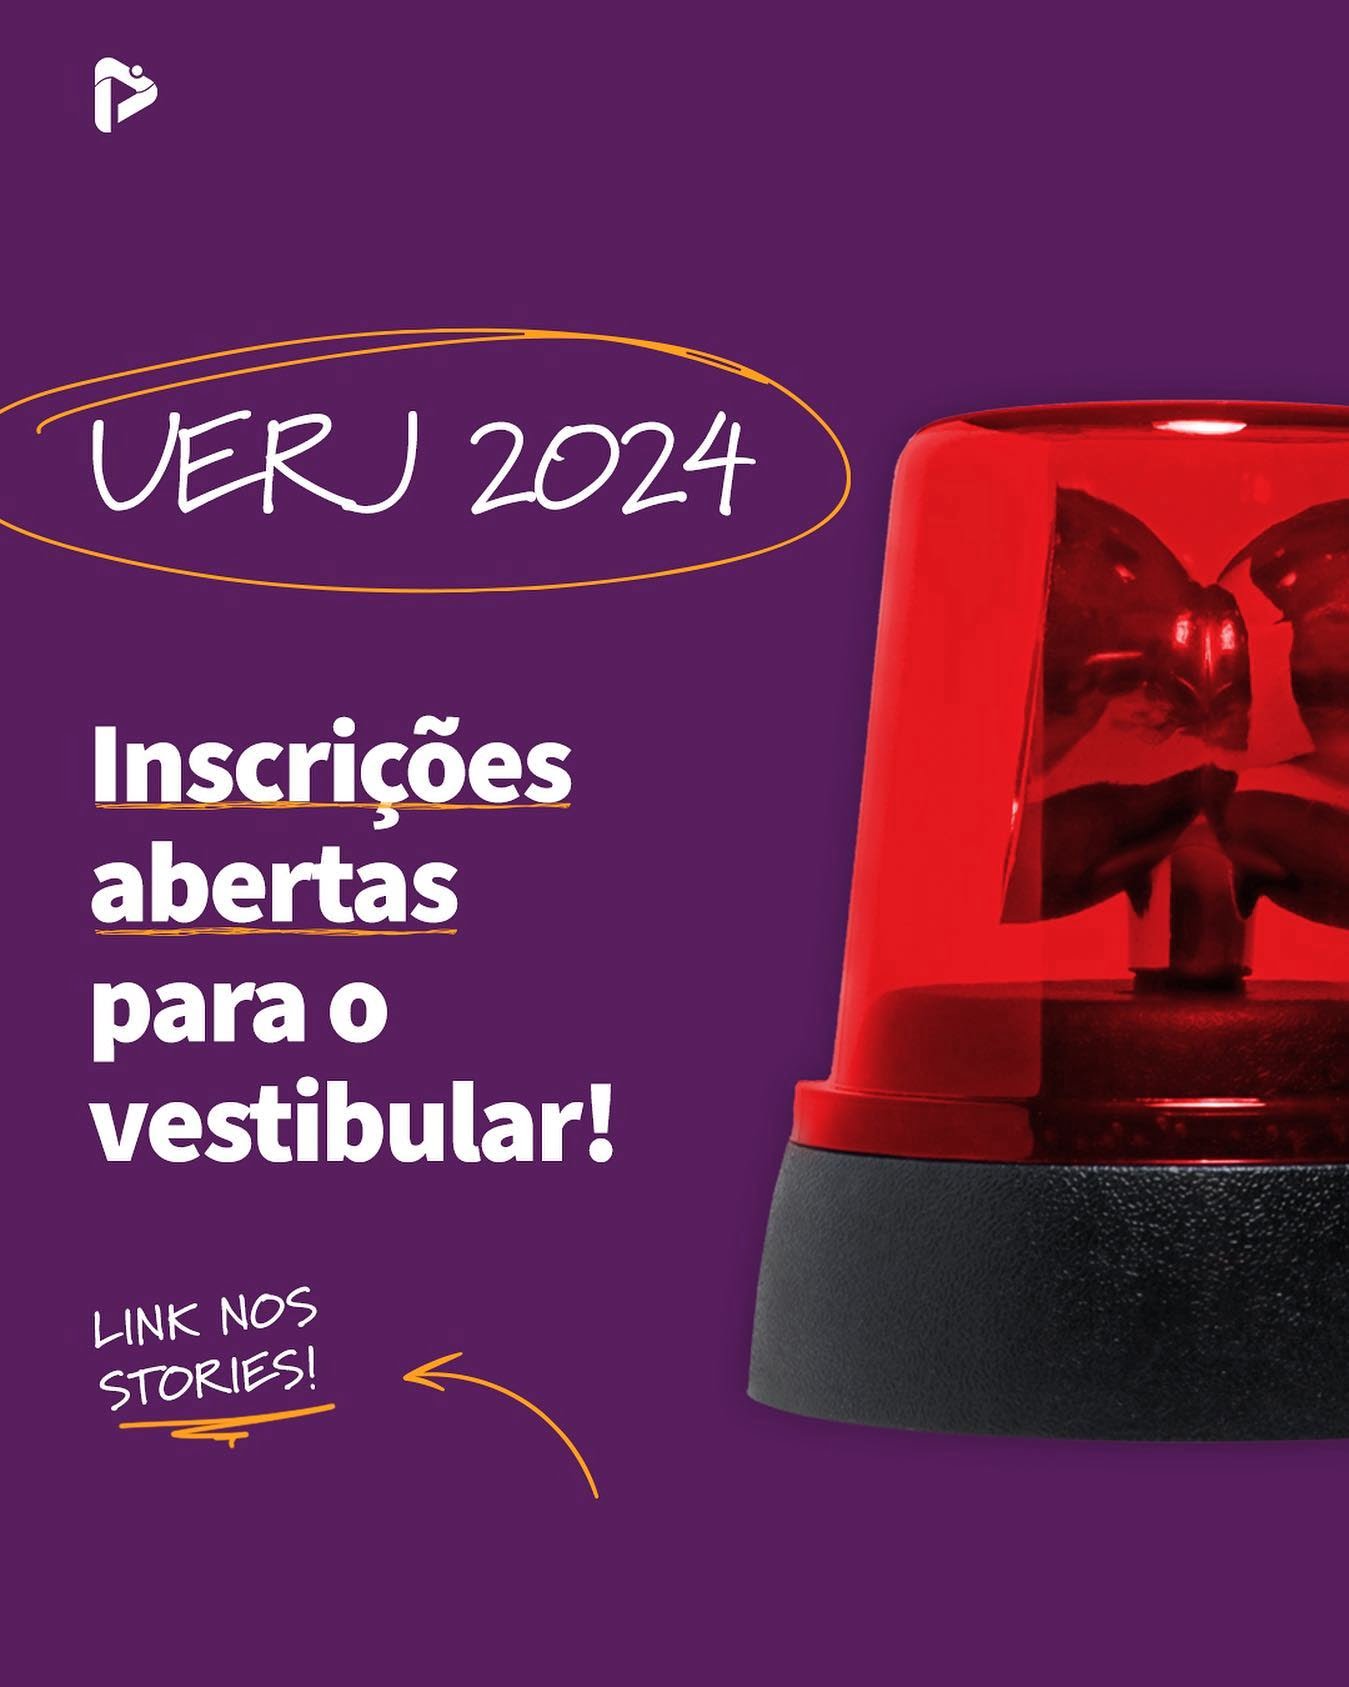 Inscrições para a primeira etapa do Vestibular Uerj 2024 estão